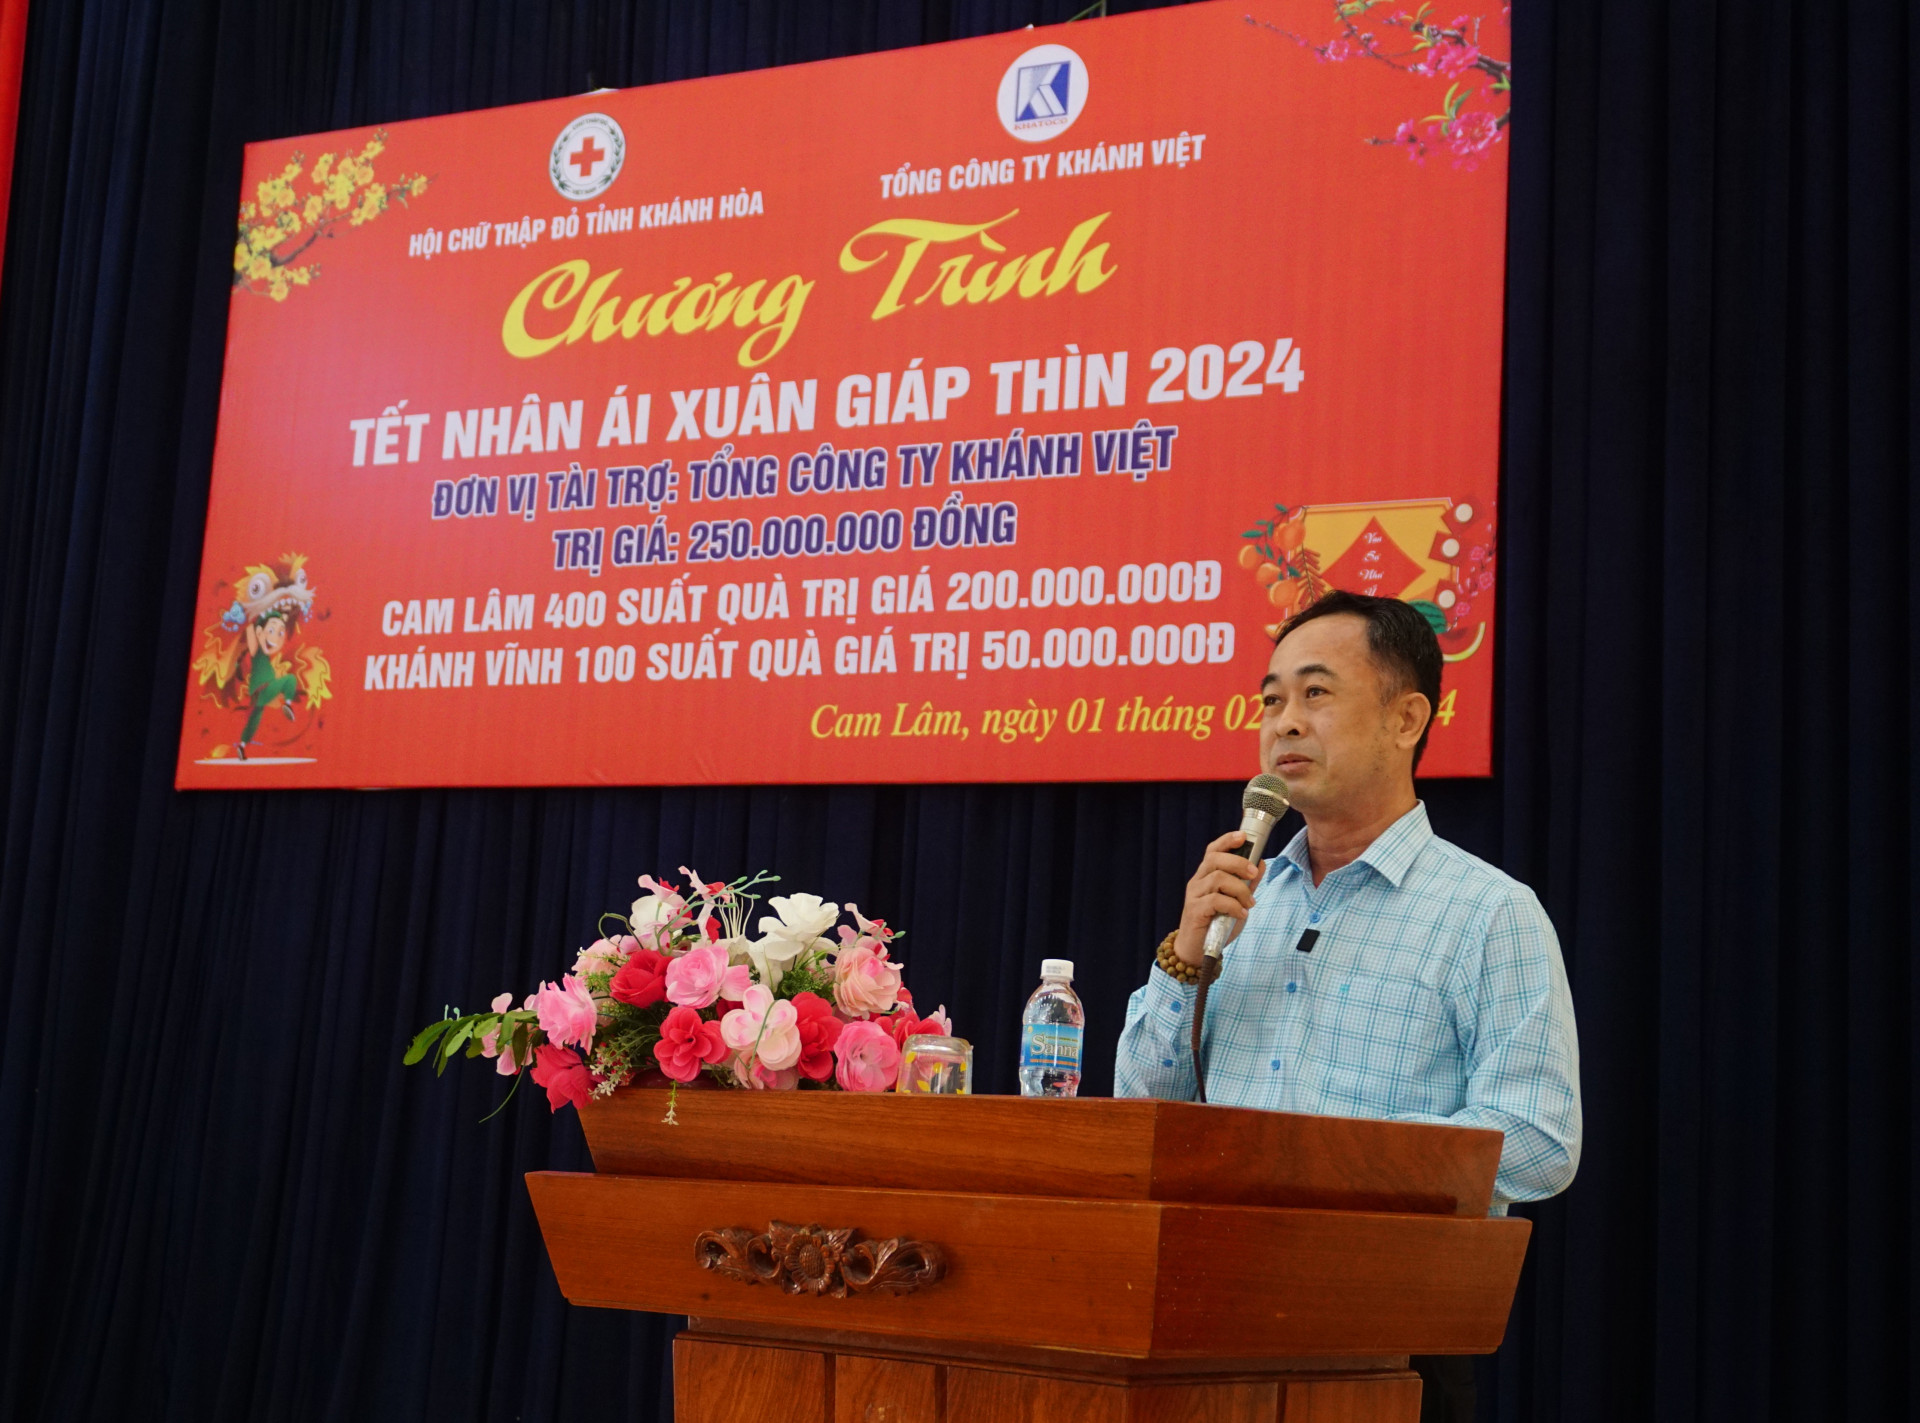 Ông Trần Minh Quang - Phụ trách hội đồng thành viên Tổng Công ty Khánh Việt phát biểu tại chương trình.